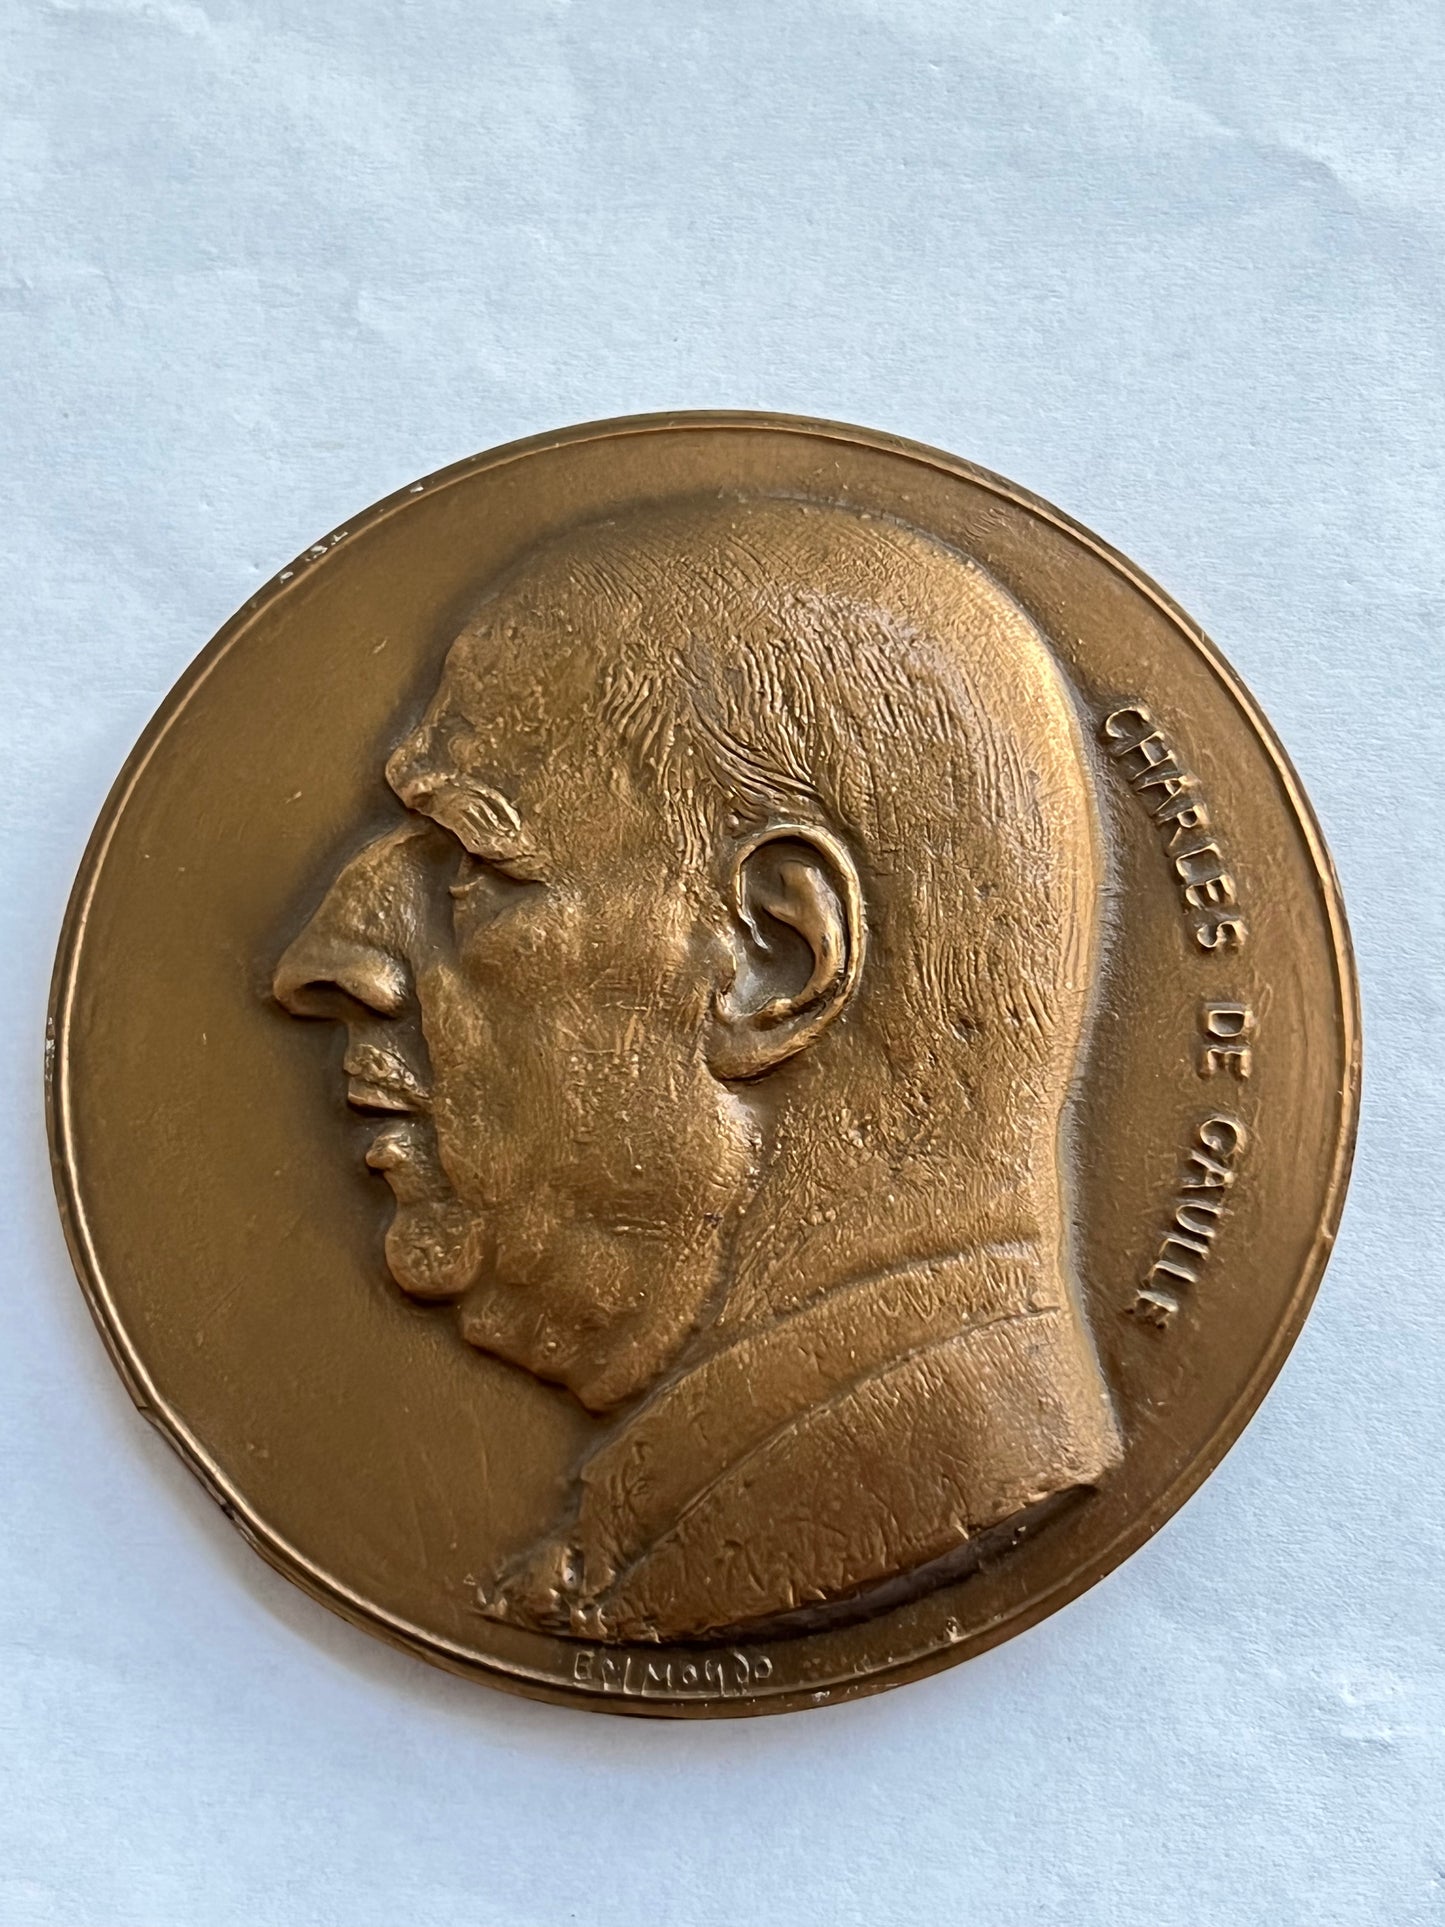 бронзовая медаль Генерал де Голль Деревянная работа Бельмондо 1979 г.